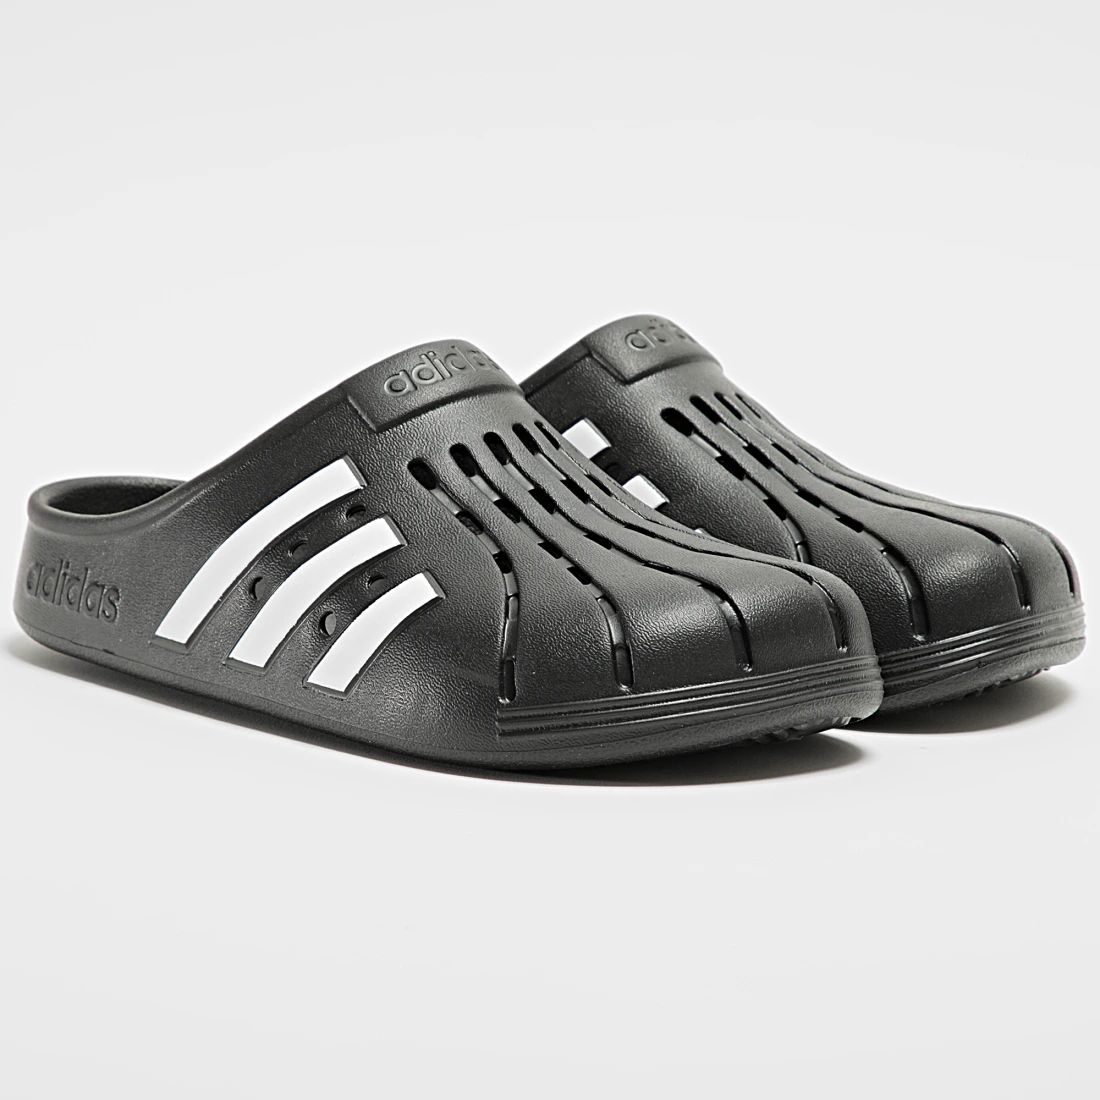 Dép Sục Nam Adidas Adilette Clogs Slip-On Men's Soft Comfort Sandals Black - GZ5886 